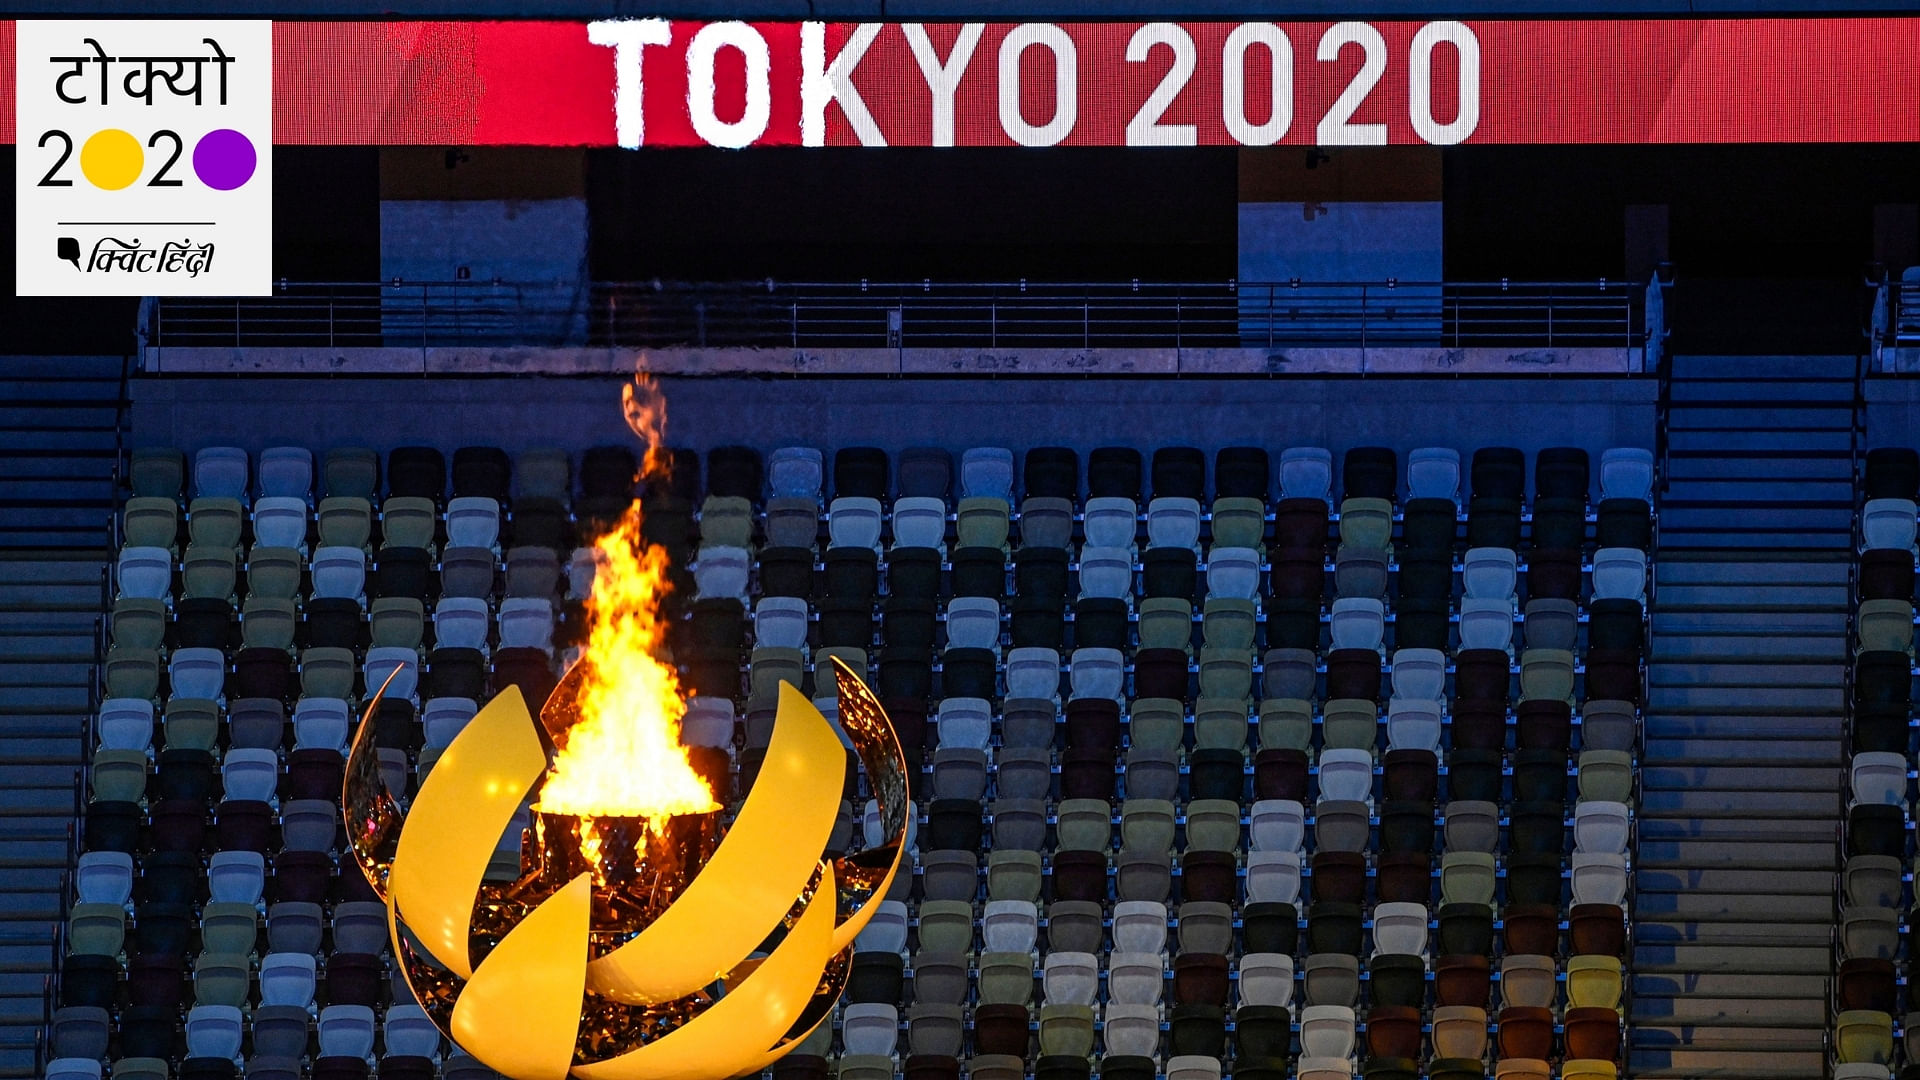 <div class="paragraphs"><p>Tokyo Olympics 2020</p></div>